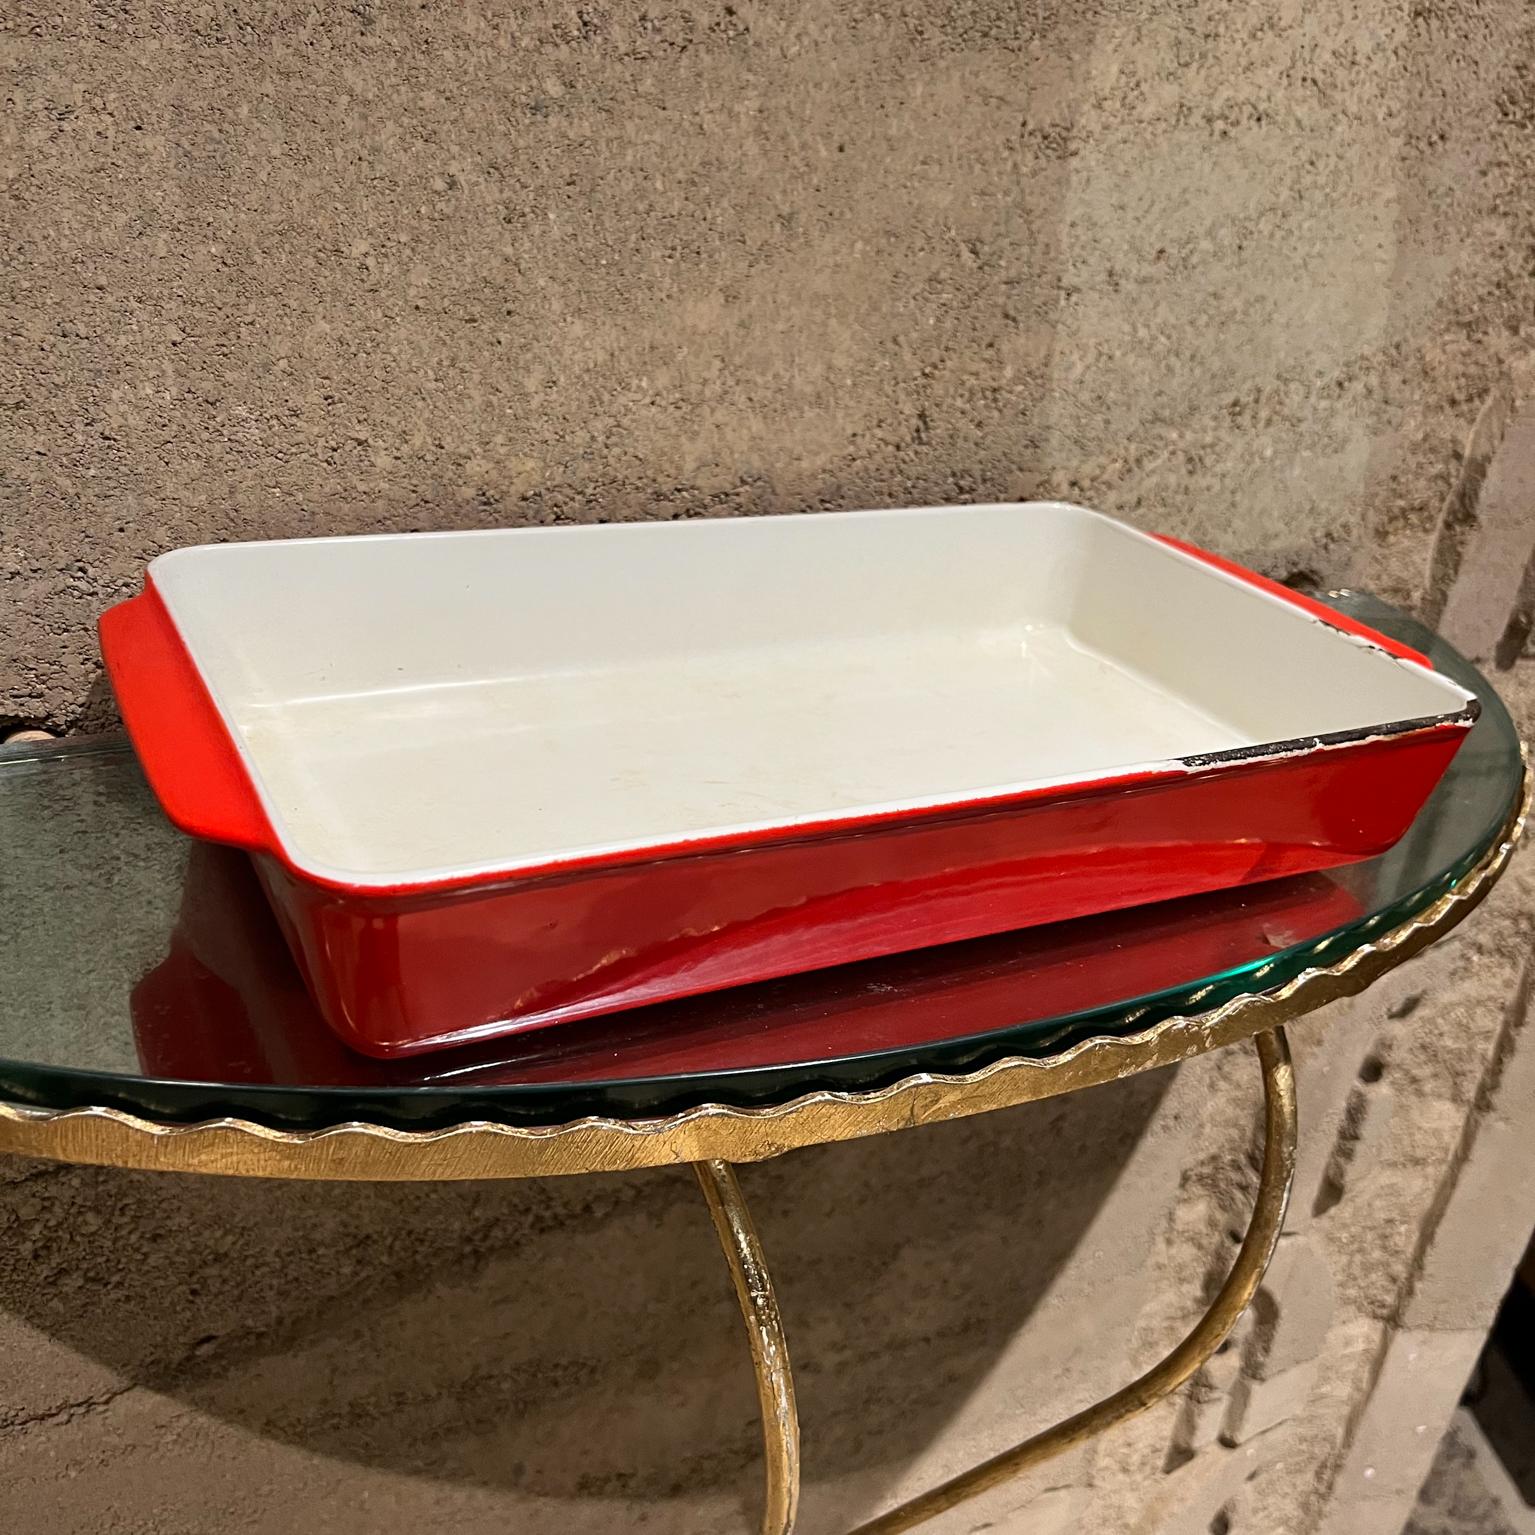 1960s Vintage Red Enamelware Casserole Baking dish Copco Michael Lax Denmark
Cocotte en fonte
2,38 haut x 8,63 d x 16 long
Estampillé en dessous de COPCO, Michael LAX.
Quelques entailles présentes sur les bords.
État d'origine non